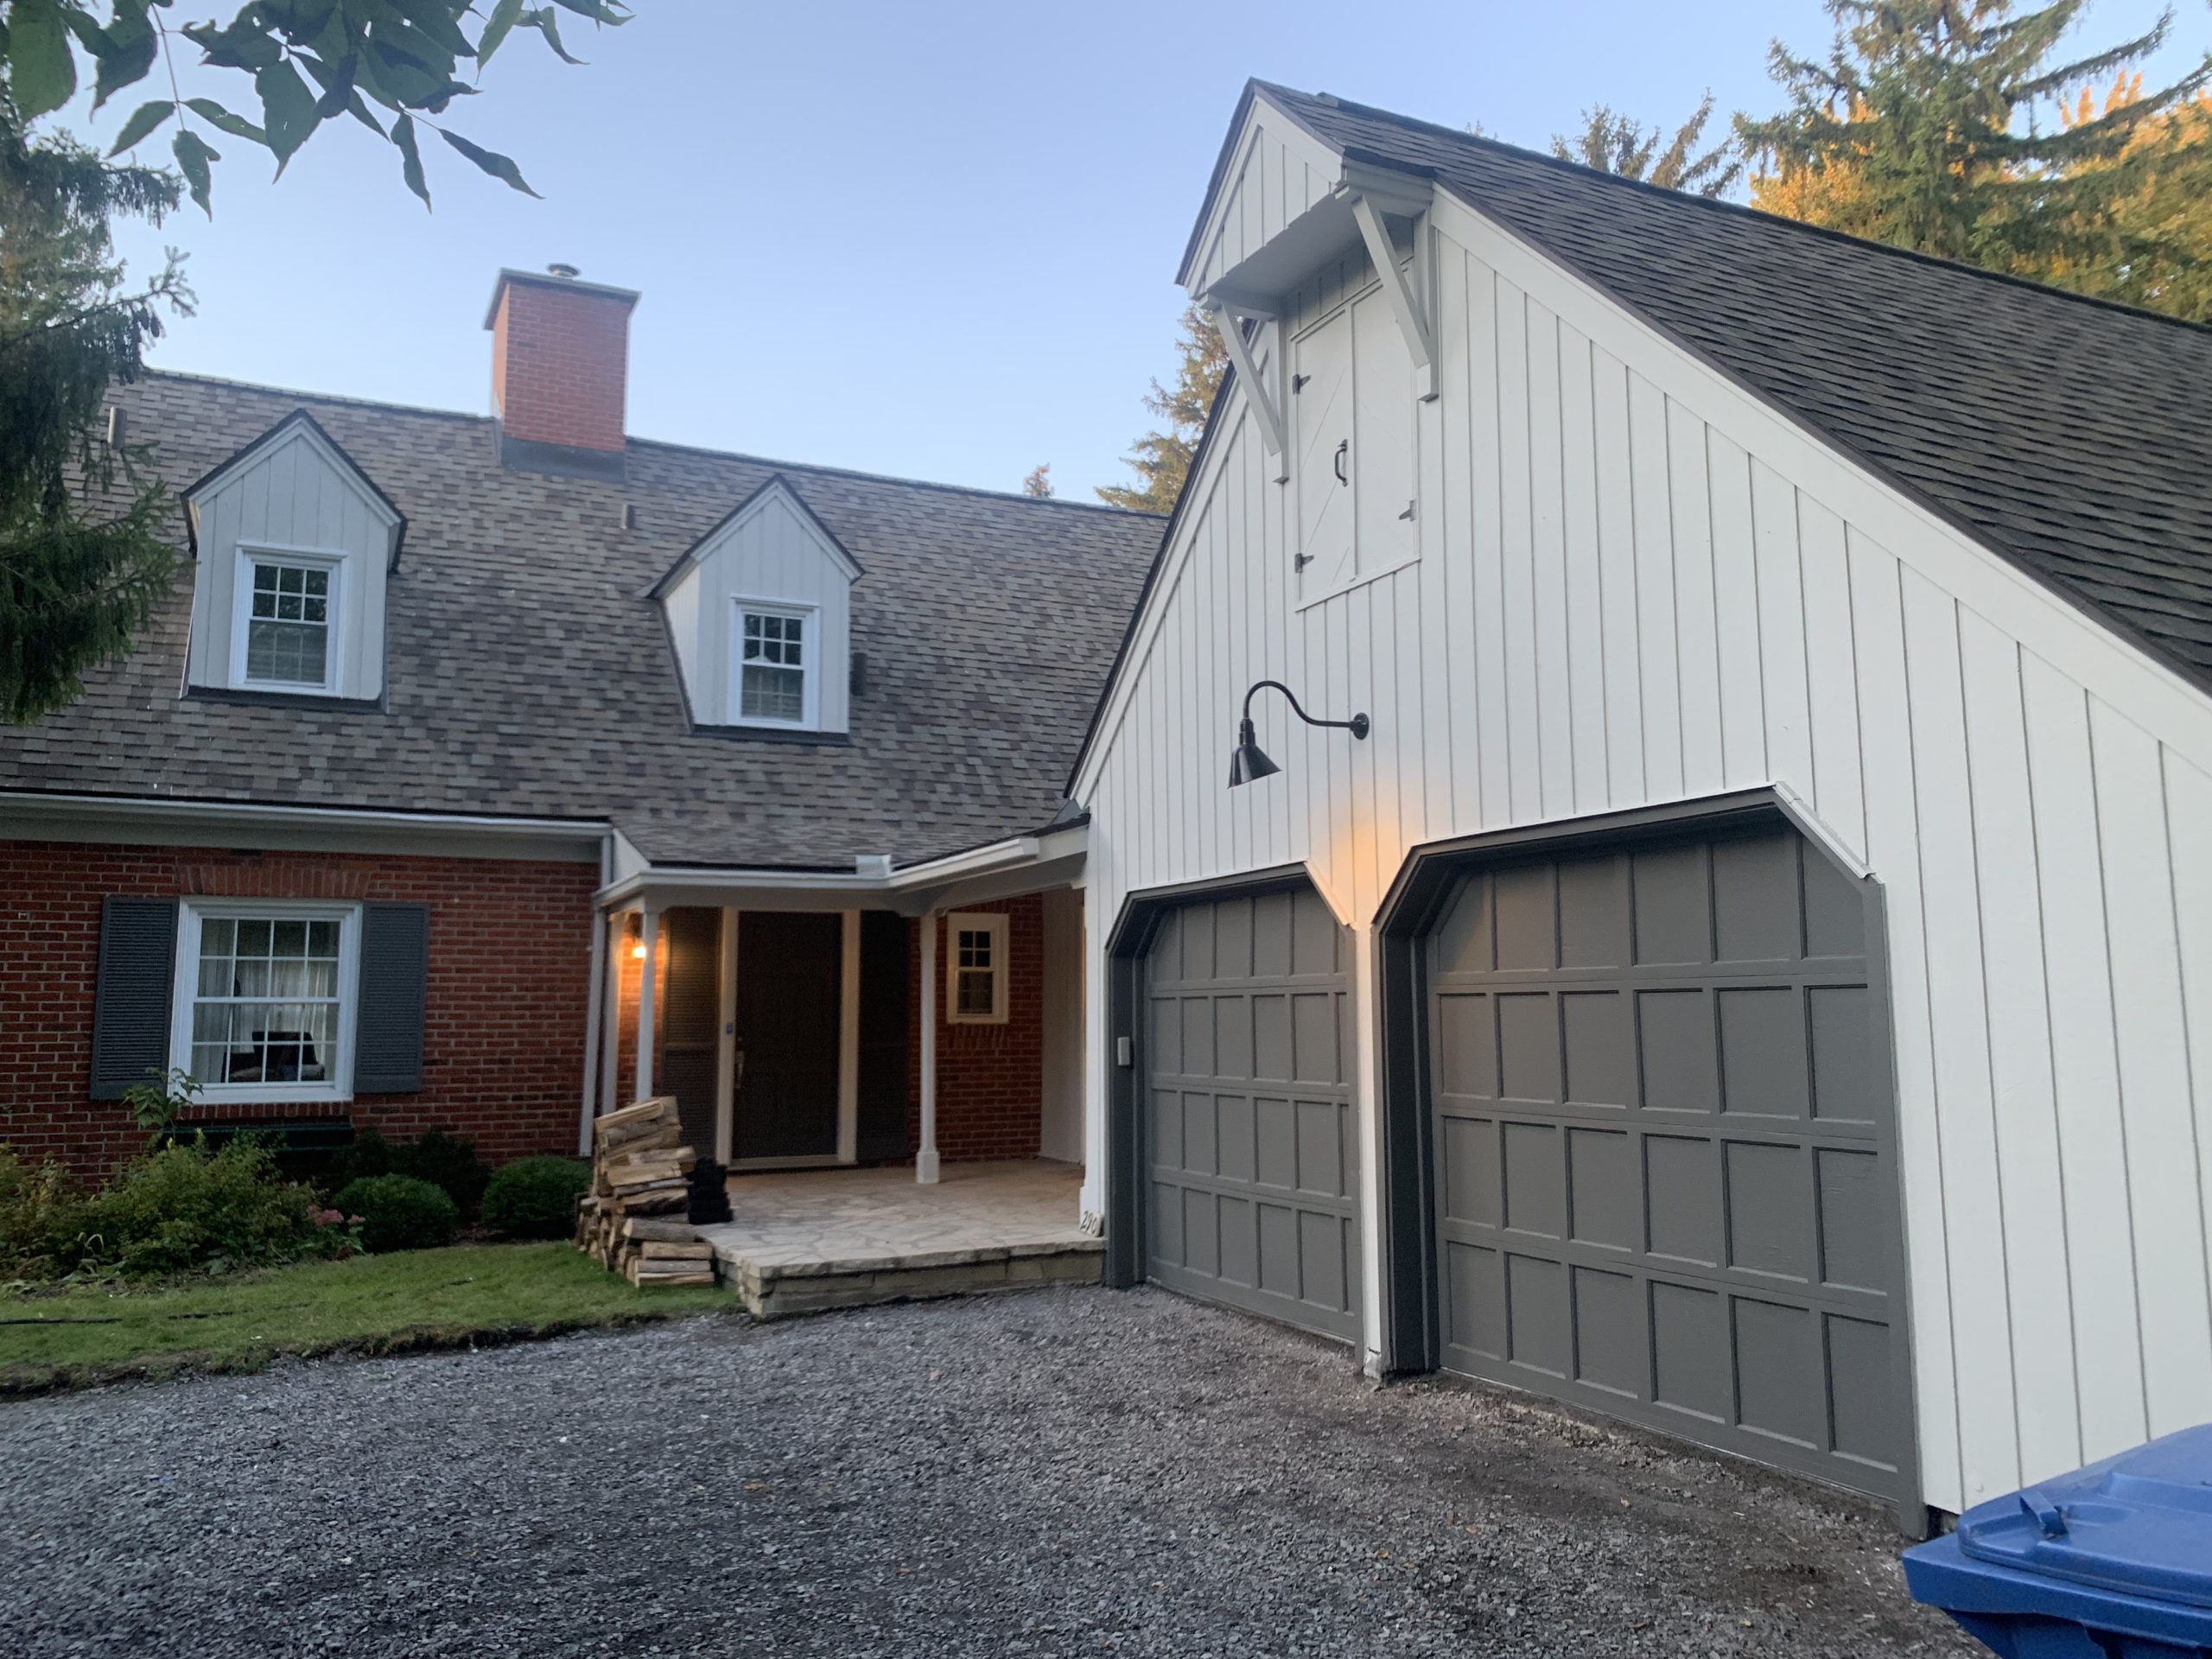 Maison avec 2 lucarnes et 2 portes de garage en bois et brique fraichement repeinte couleur taupe